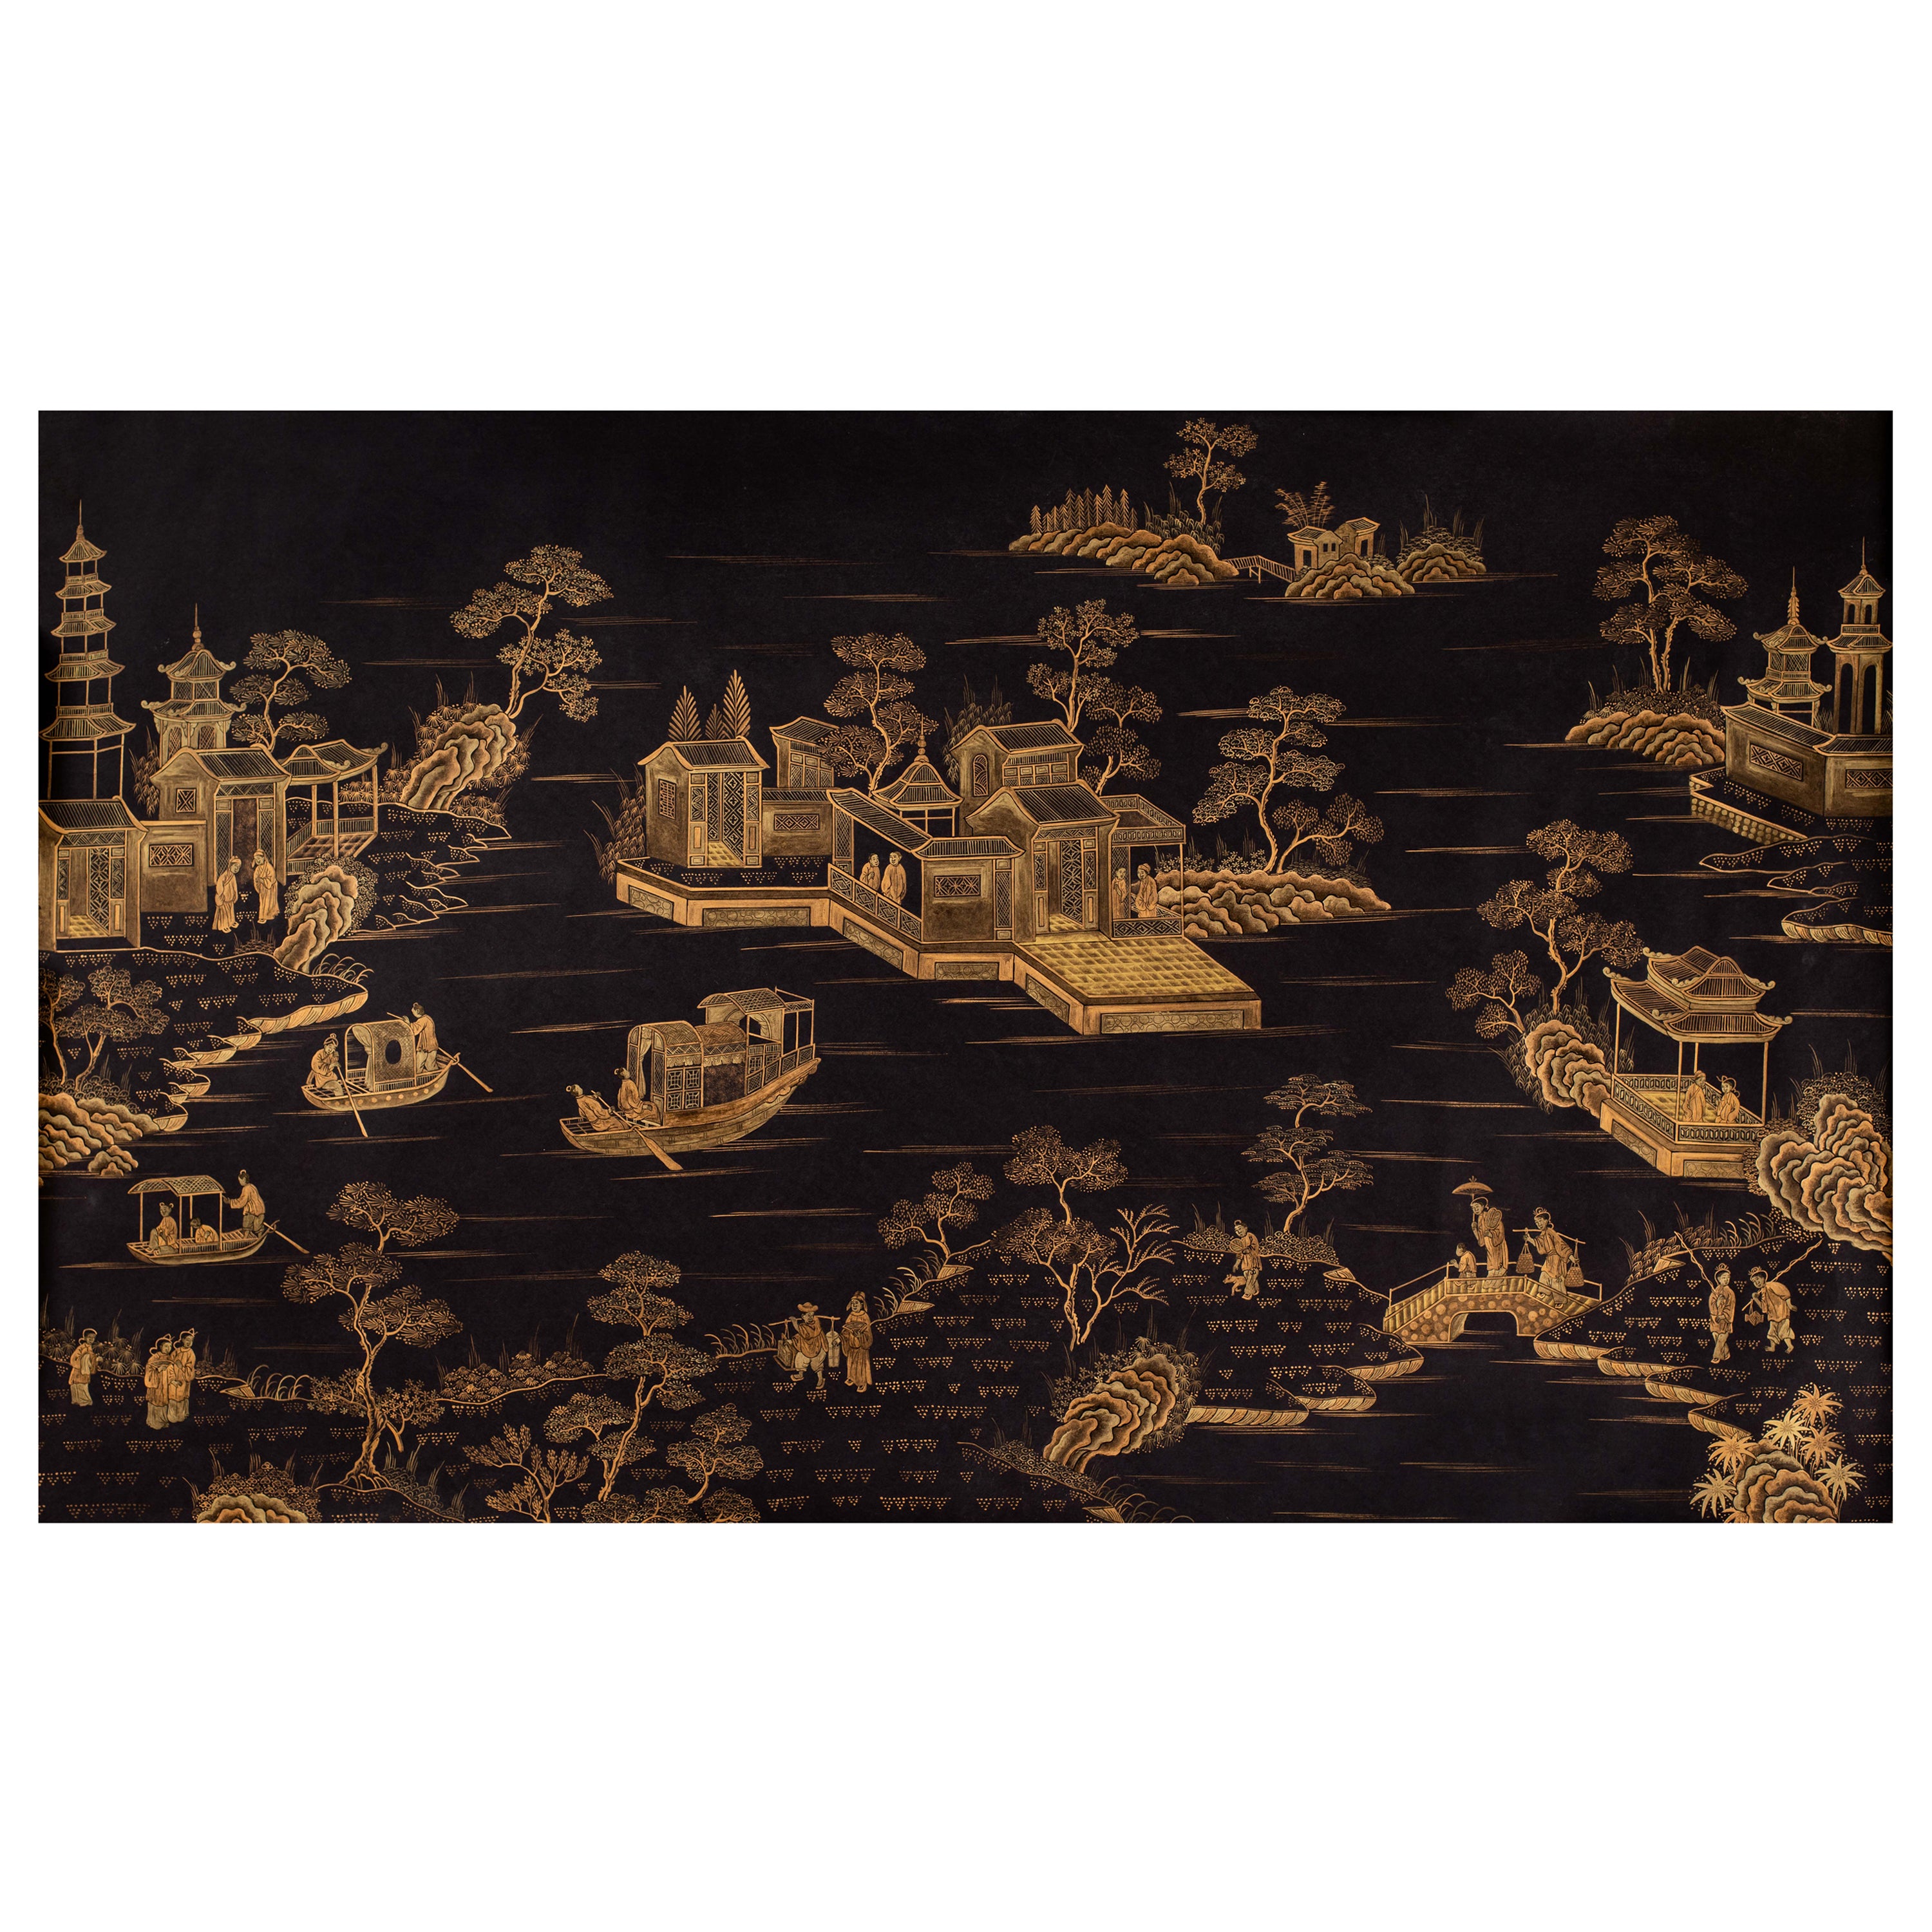 Panneaux de papier peints chinoiseries peints à la main représentant des pavillons dorés sur noir